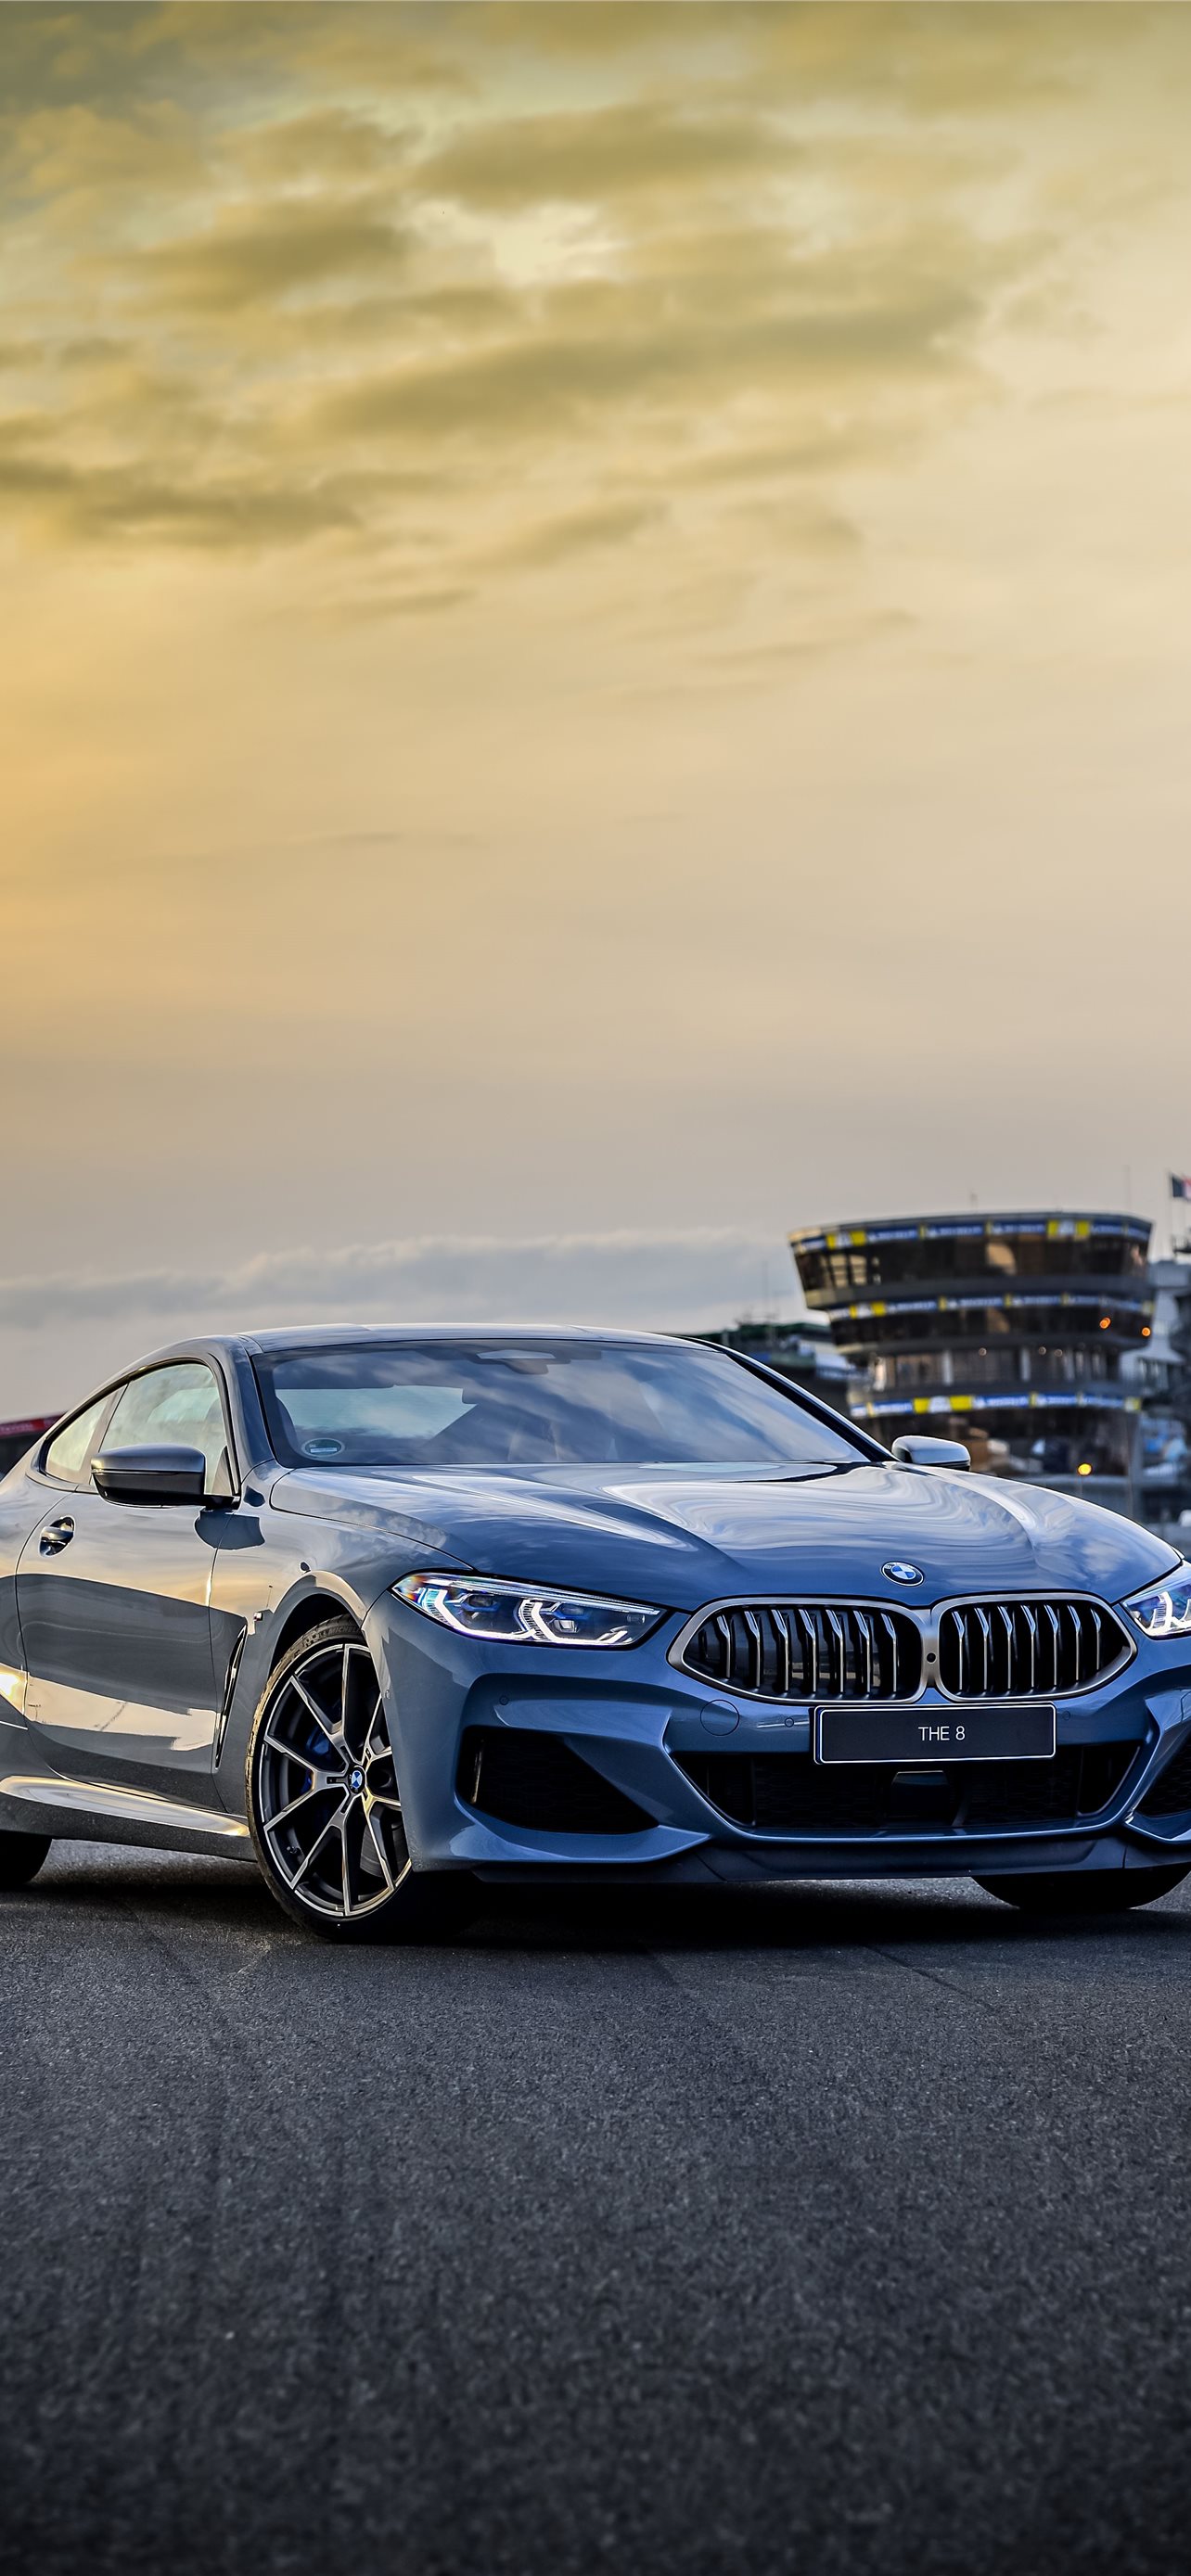 BMW 3 Series chính là sự kết hợp hoàn hảo giữa phong cách và hiệu suất. Hình ảnh mang đến cho bạn sự hiện diện đầy xứng tầm của một chiếc xe BMW đẳng cấp. Khám phá các tính năng và thiết kế đẹp mắt từ bên ngoài đến bên trong! 